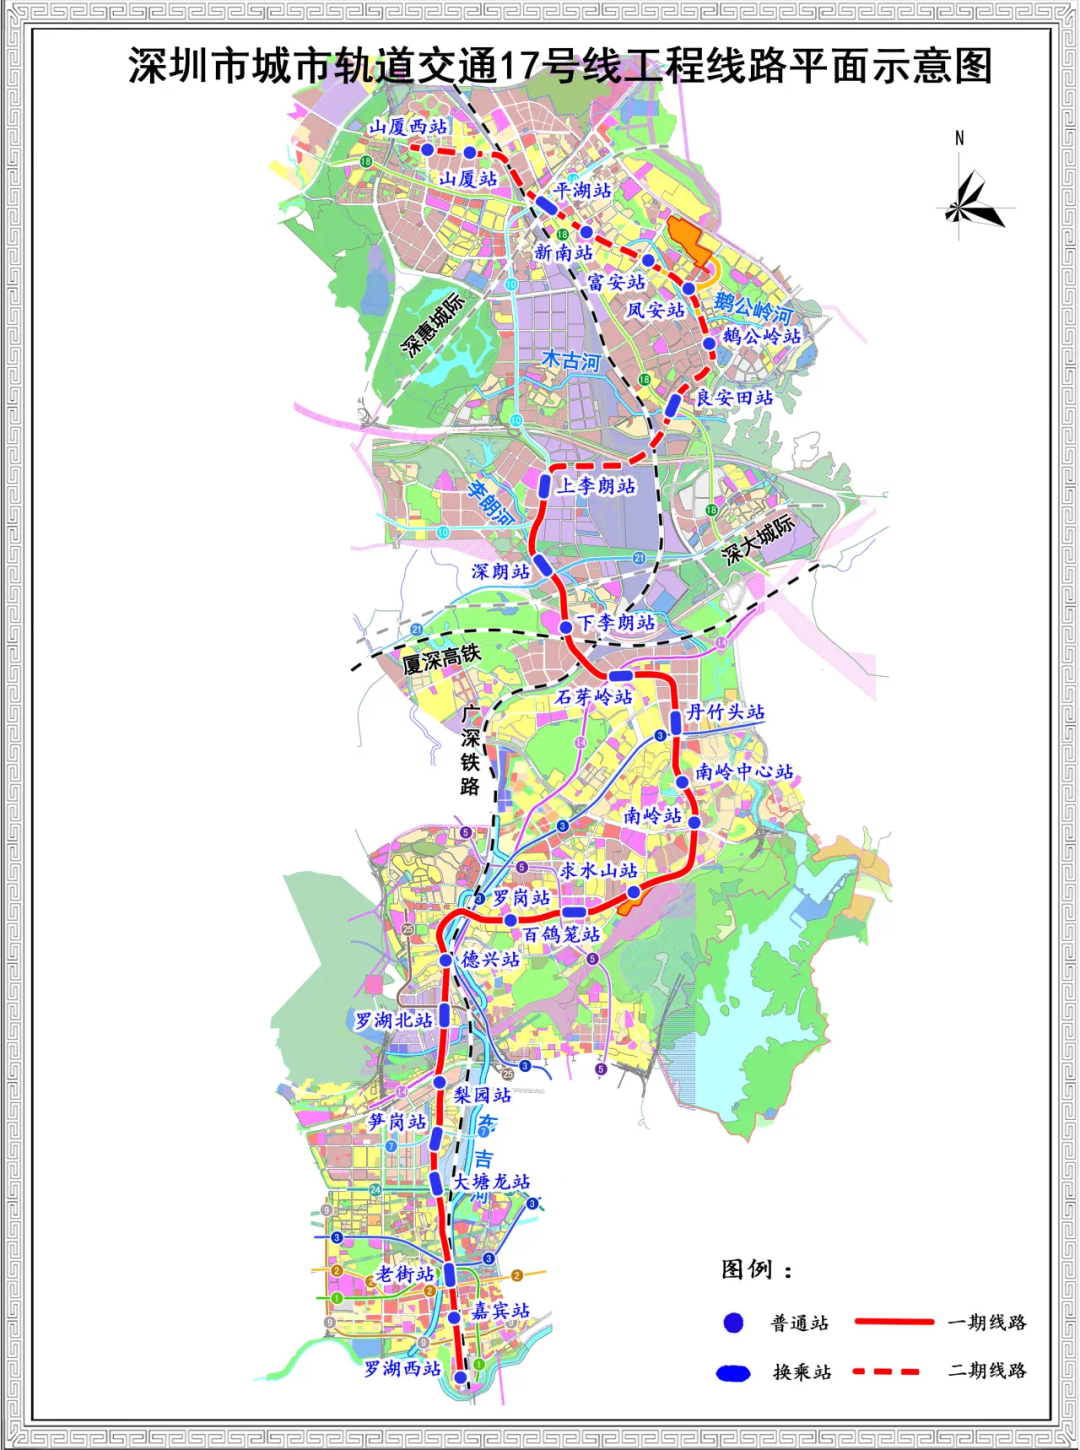 深圳地铁17号线一期工程近期备受瞩目的贯通整个南湾辖区的17号线重点